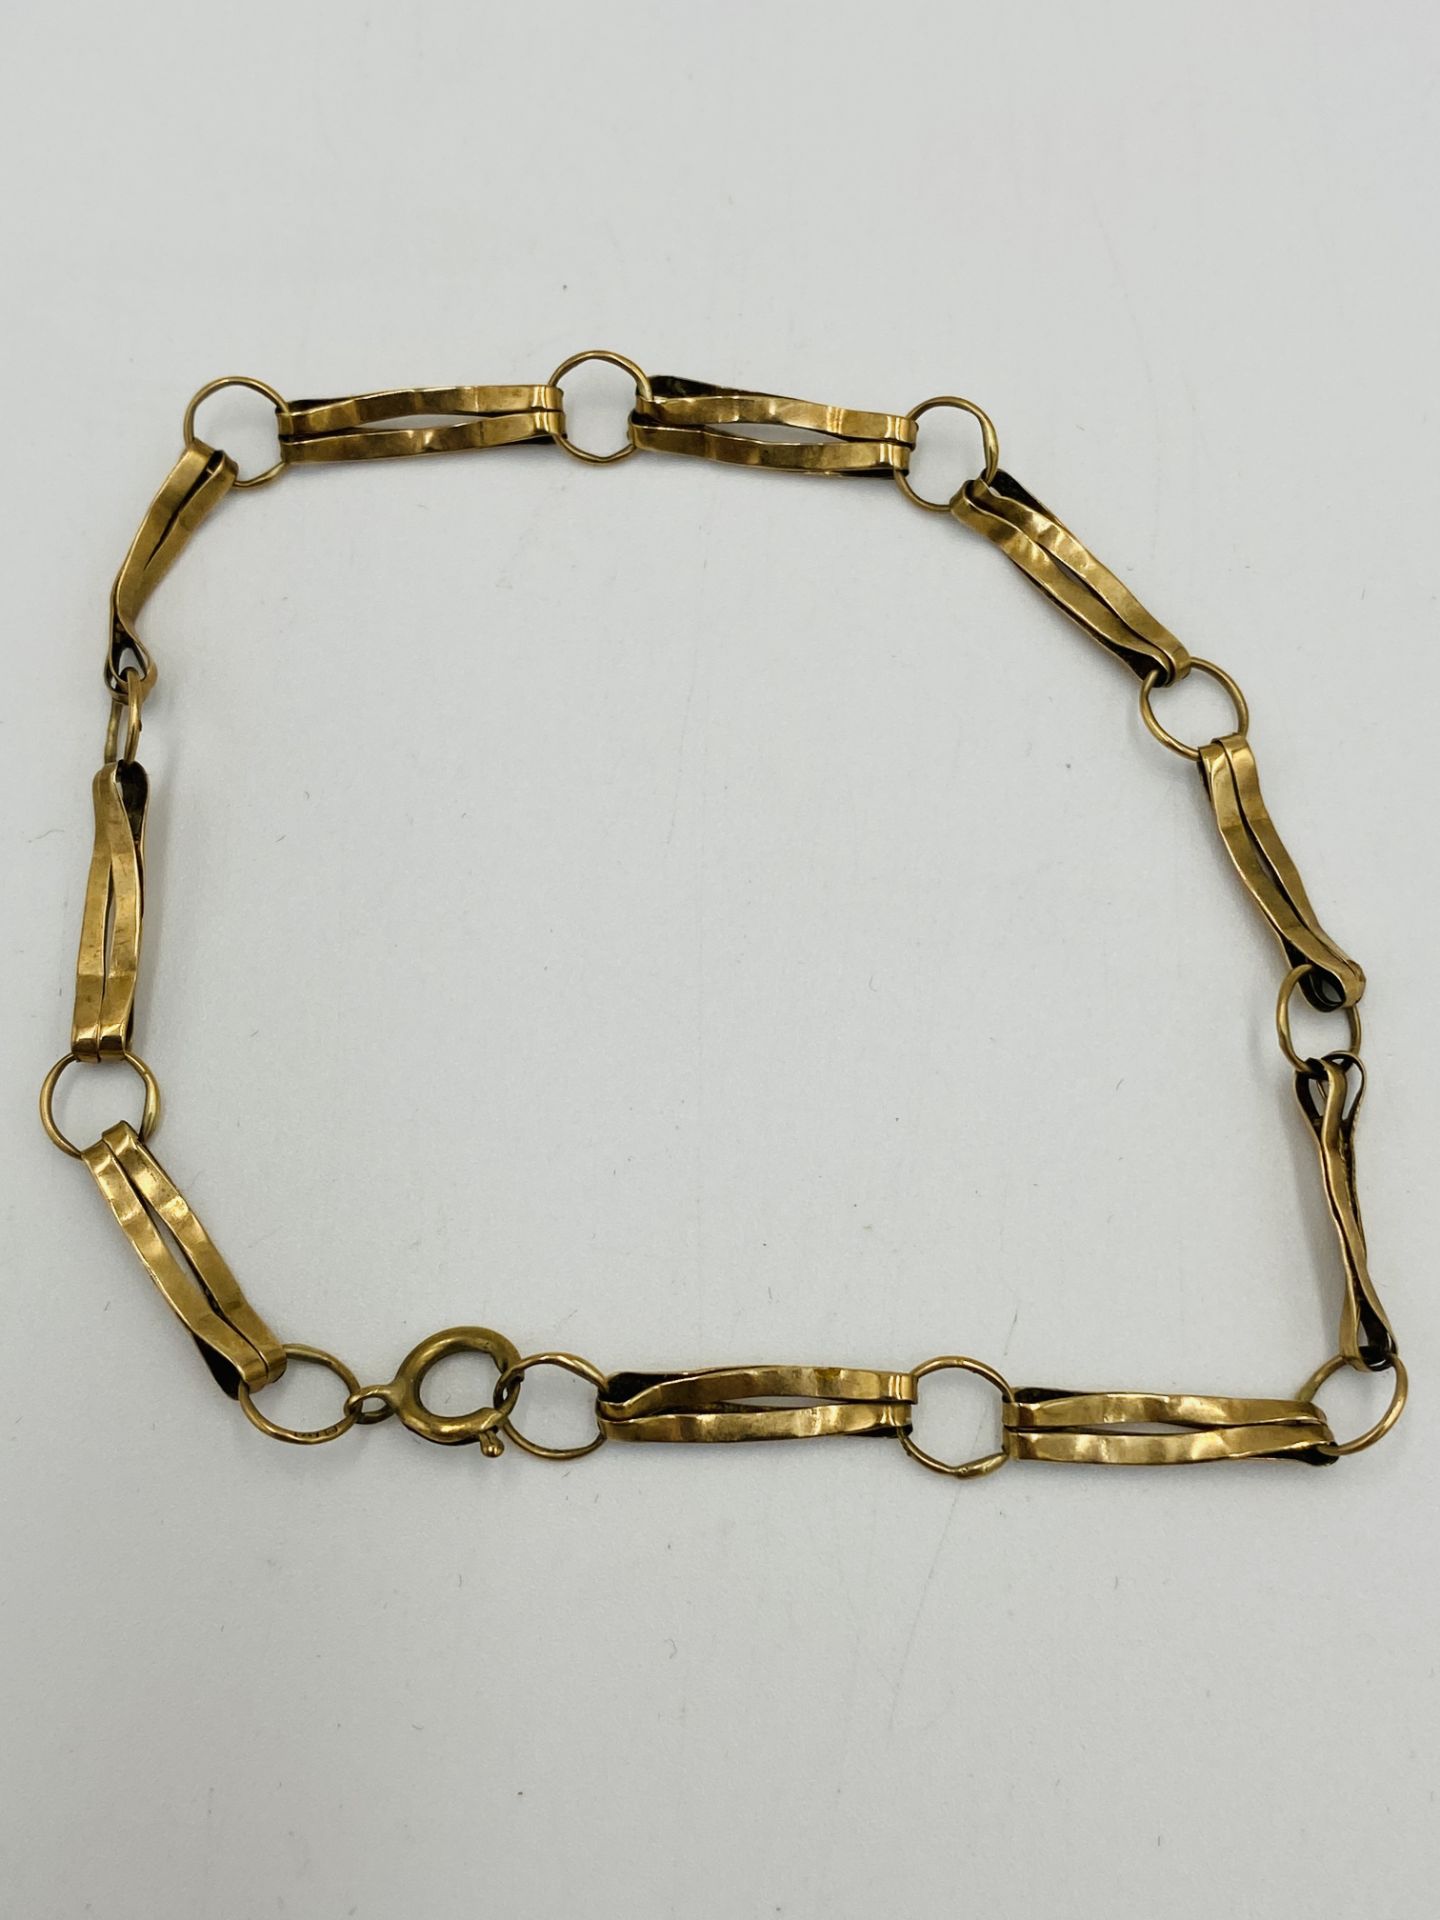 9ct gold bracelet - Image 3 of 4